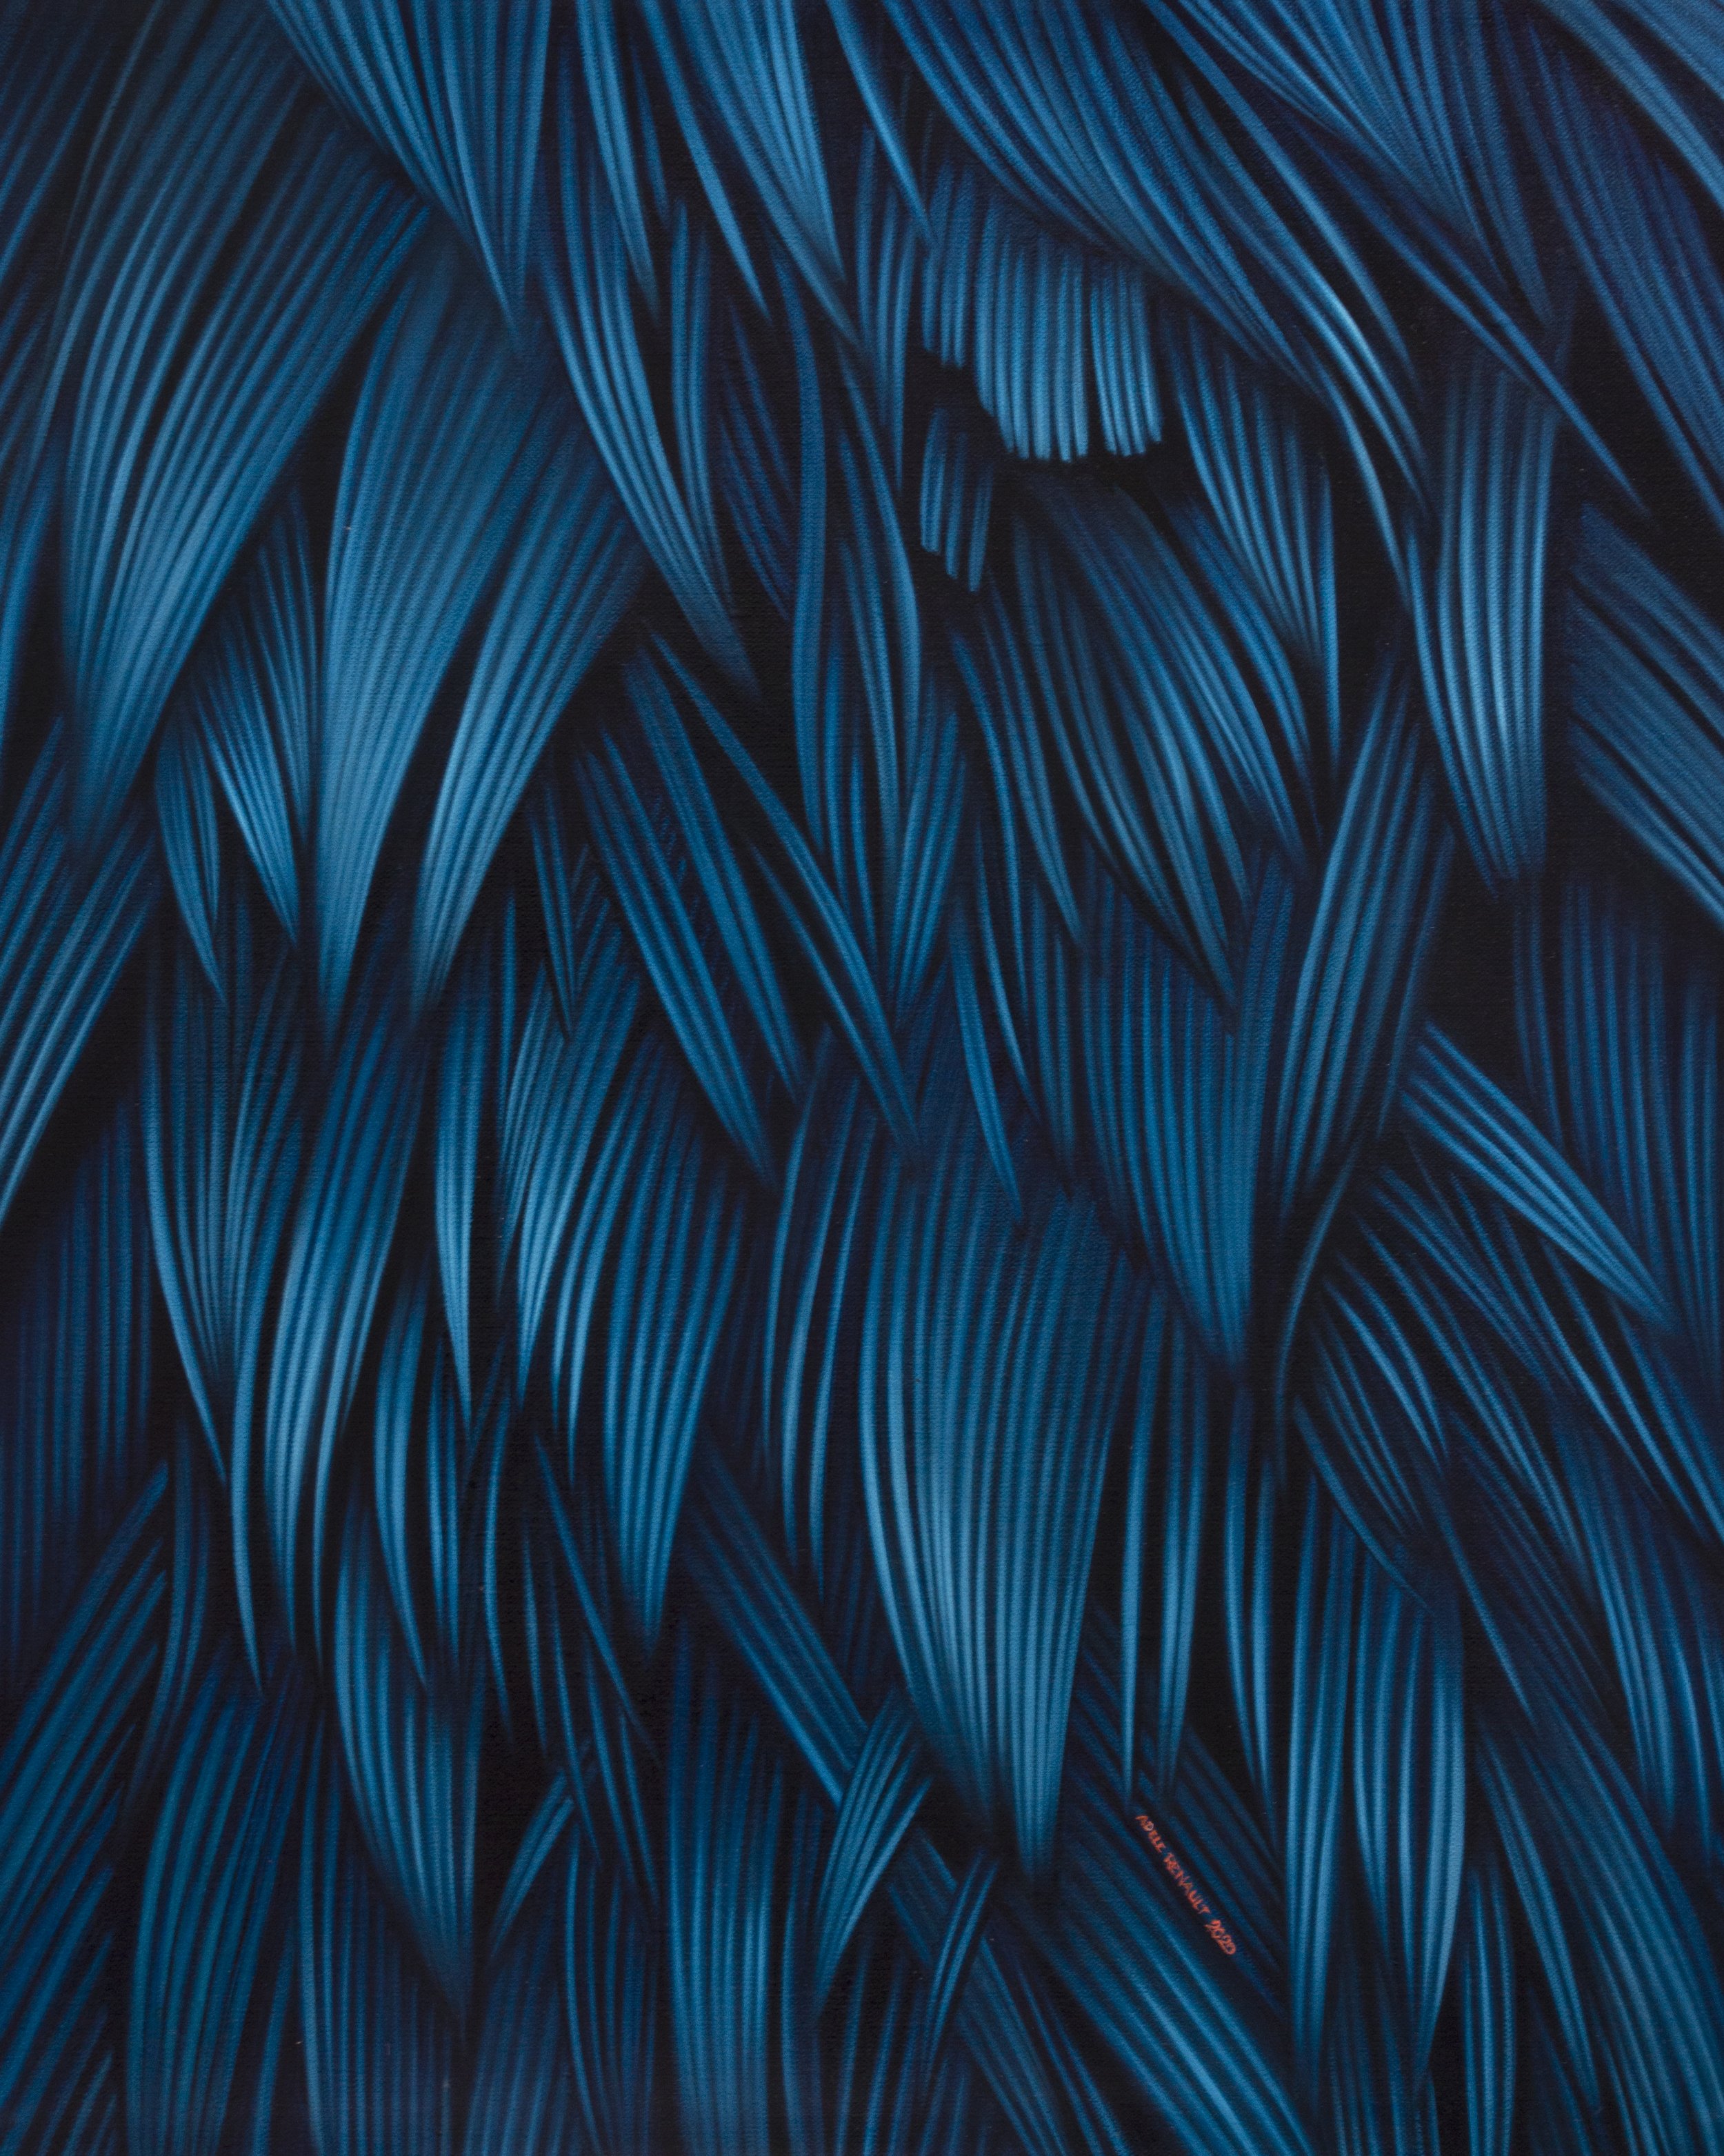 Gutter Paradise Blue-study 40x50cm oil on linen 2020.jpg